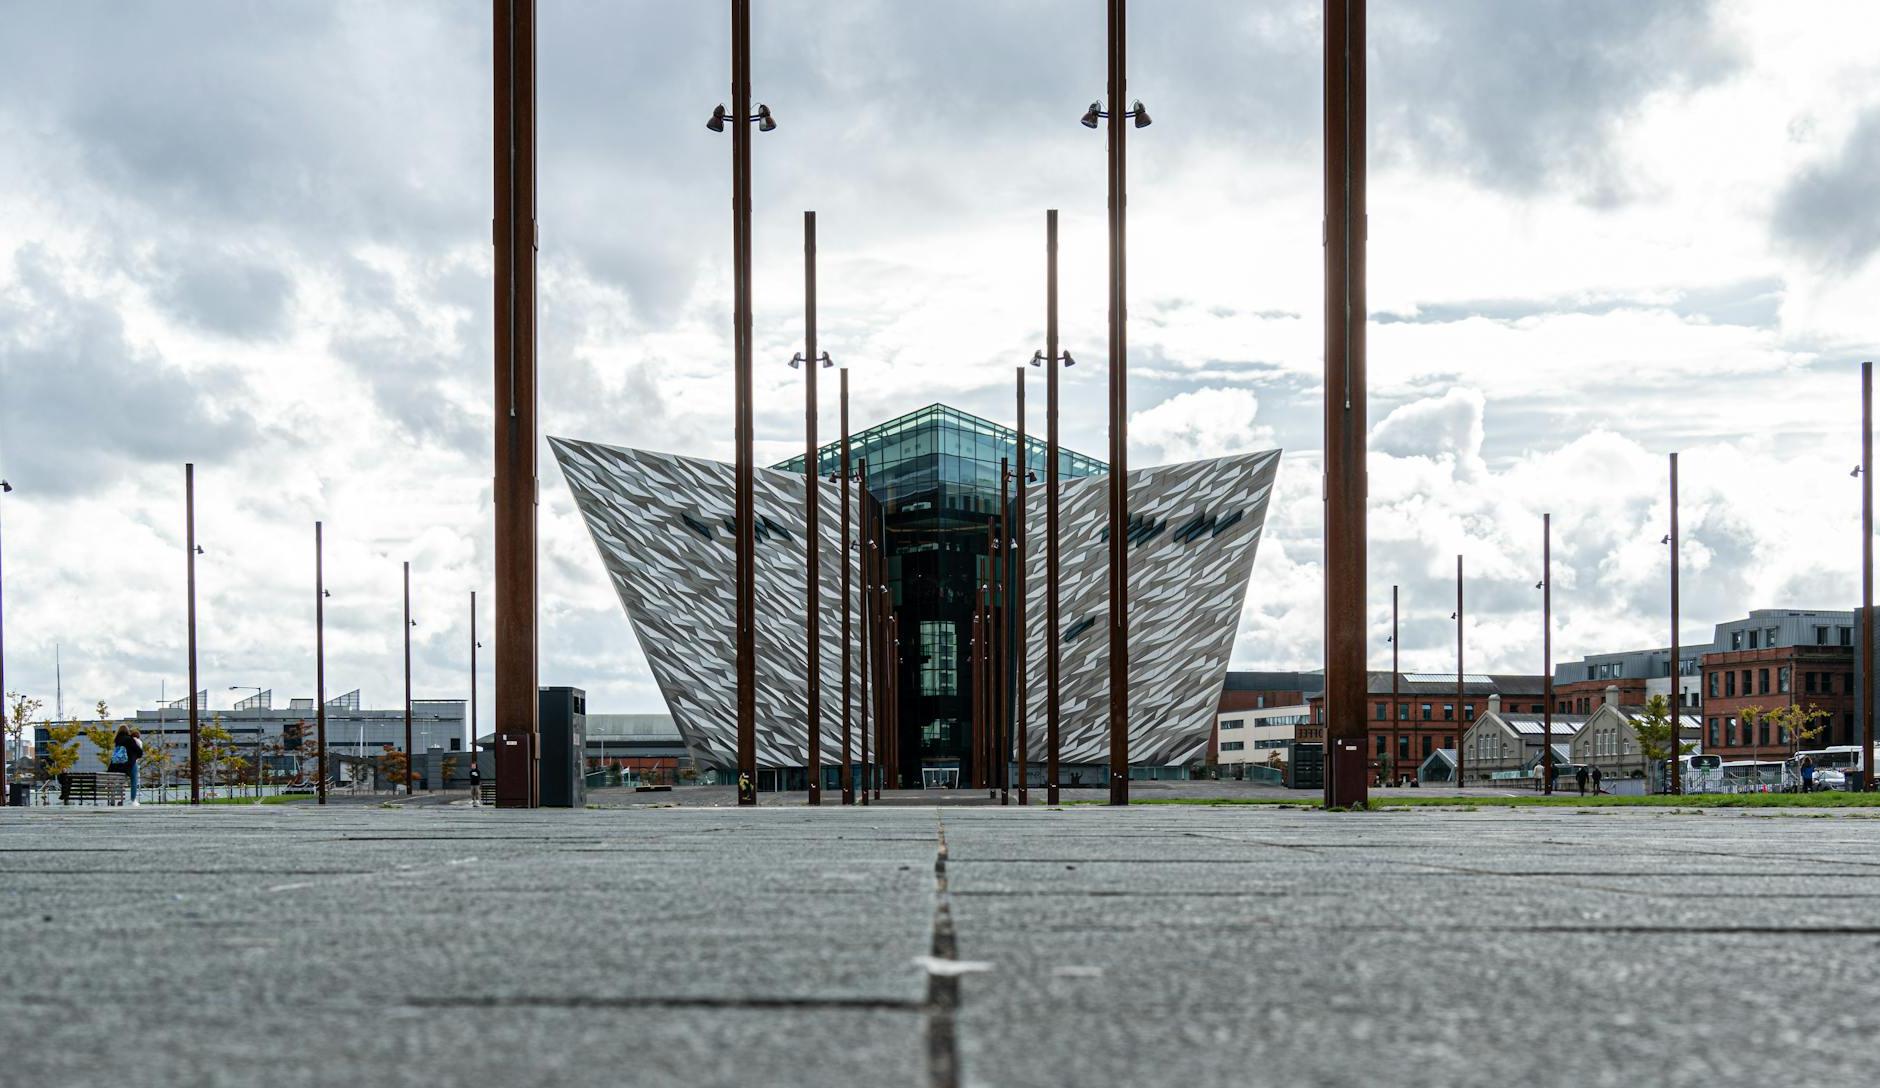 View of the Building of Titanic Belfast in Belfast, Northern Ireland